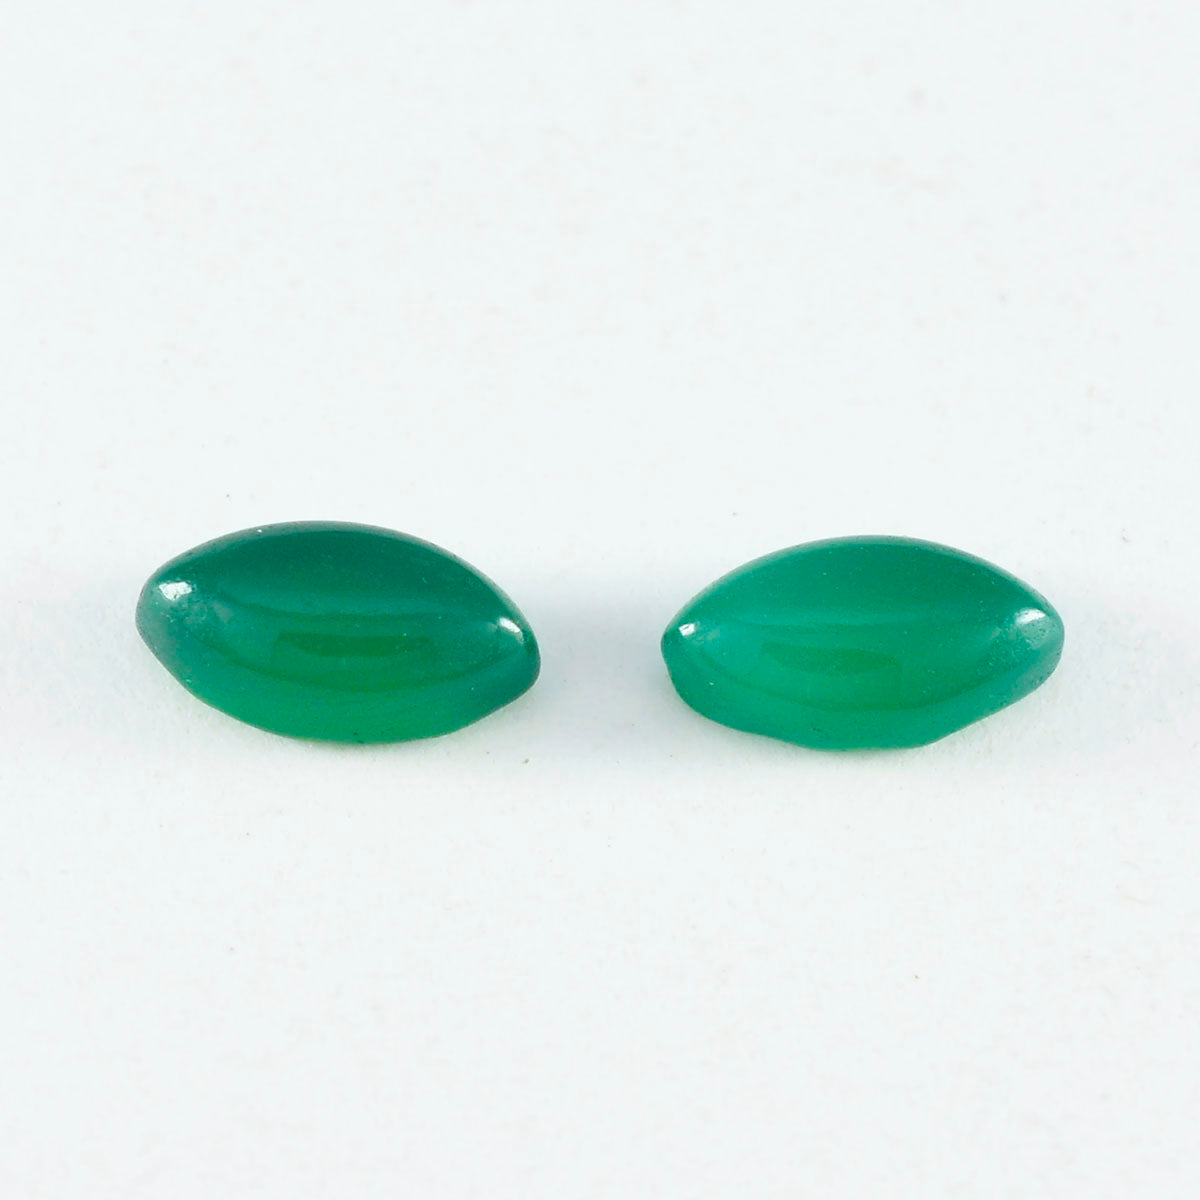 Riyogems 1 Stück grüner Onyx-Cabochon, 7 x 14 mm, Marquise-Form, lose Edelsteine in AAA-Qualität